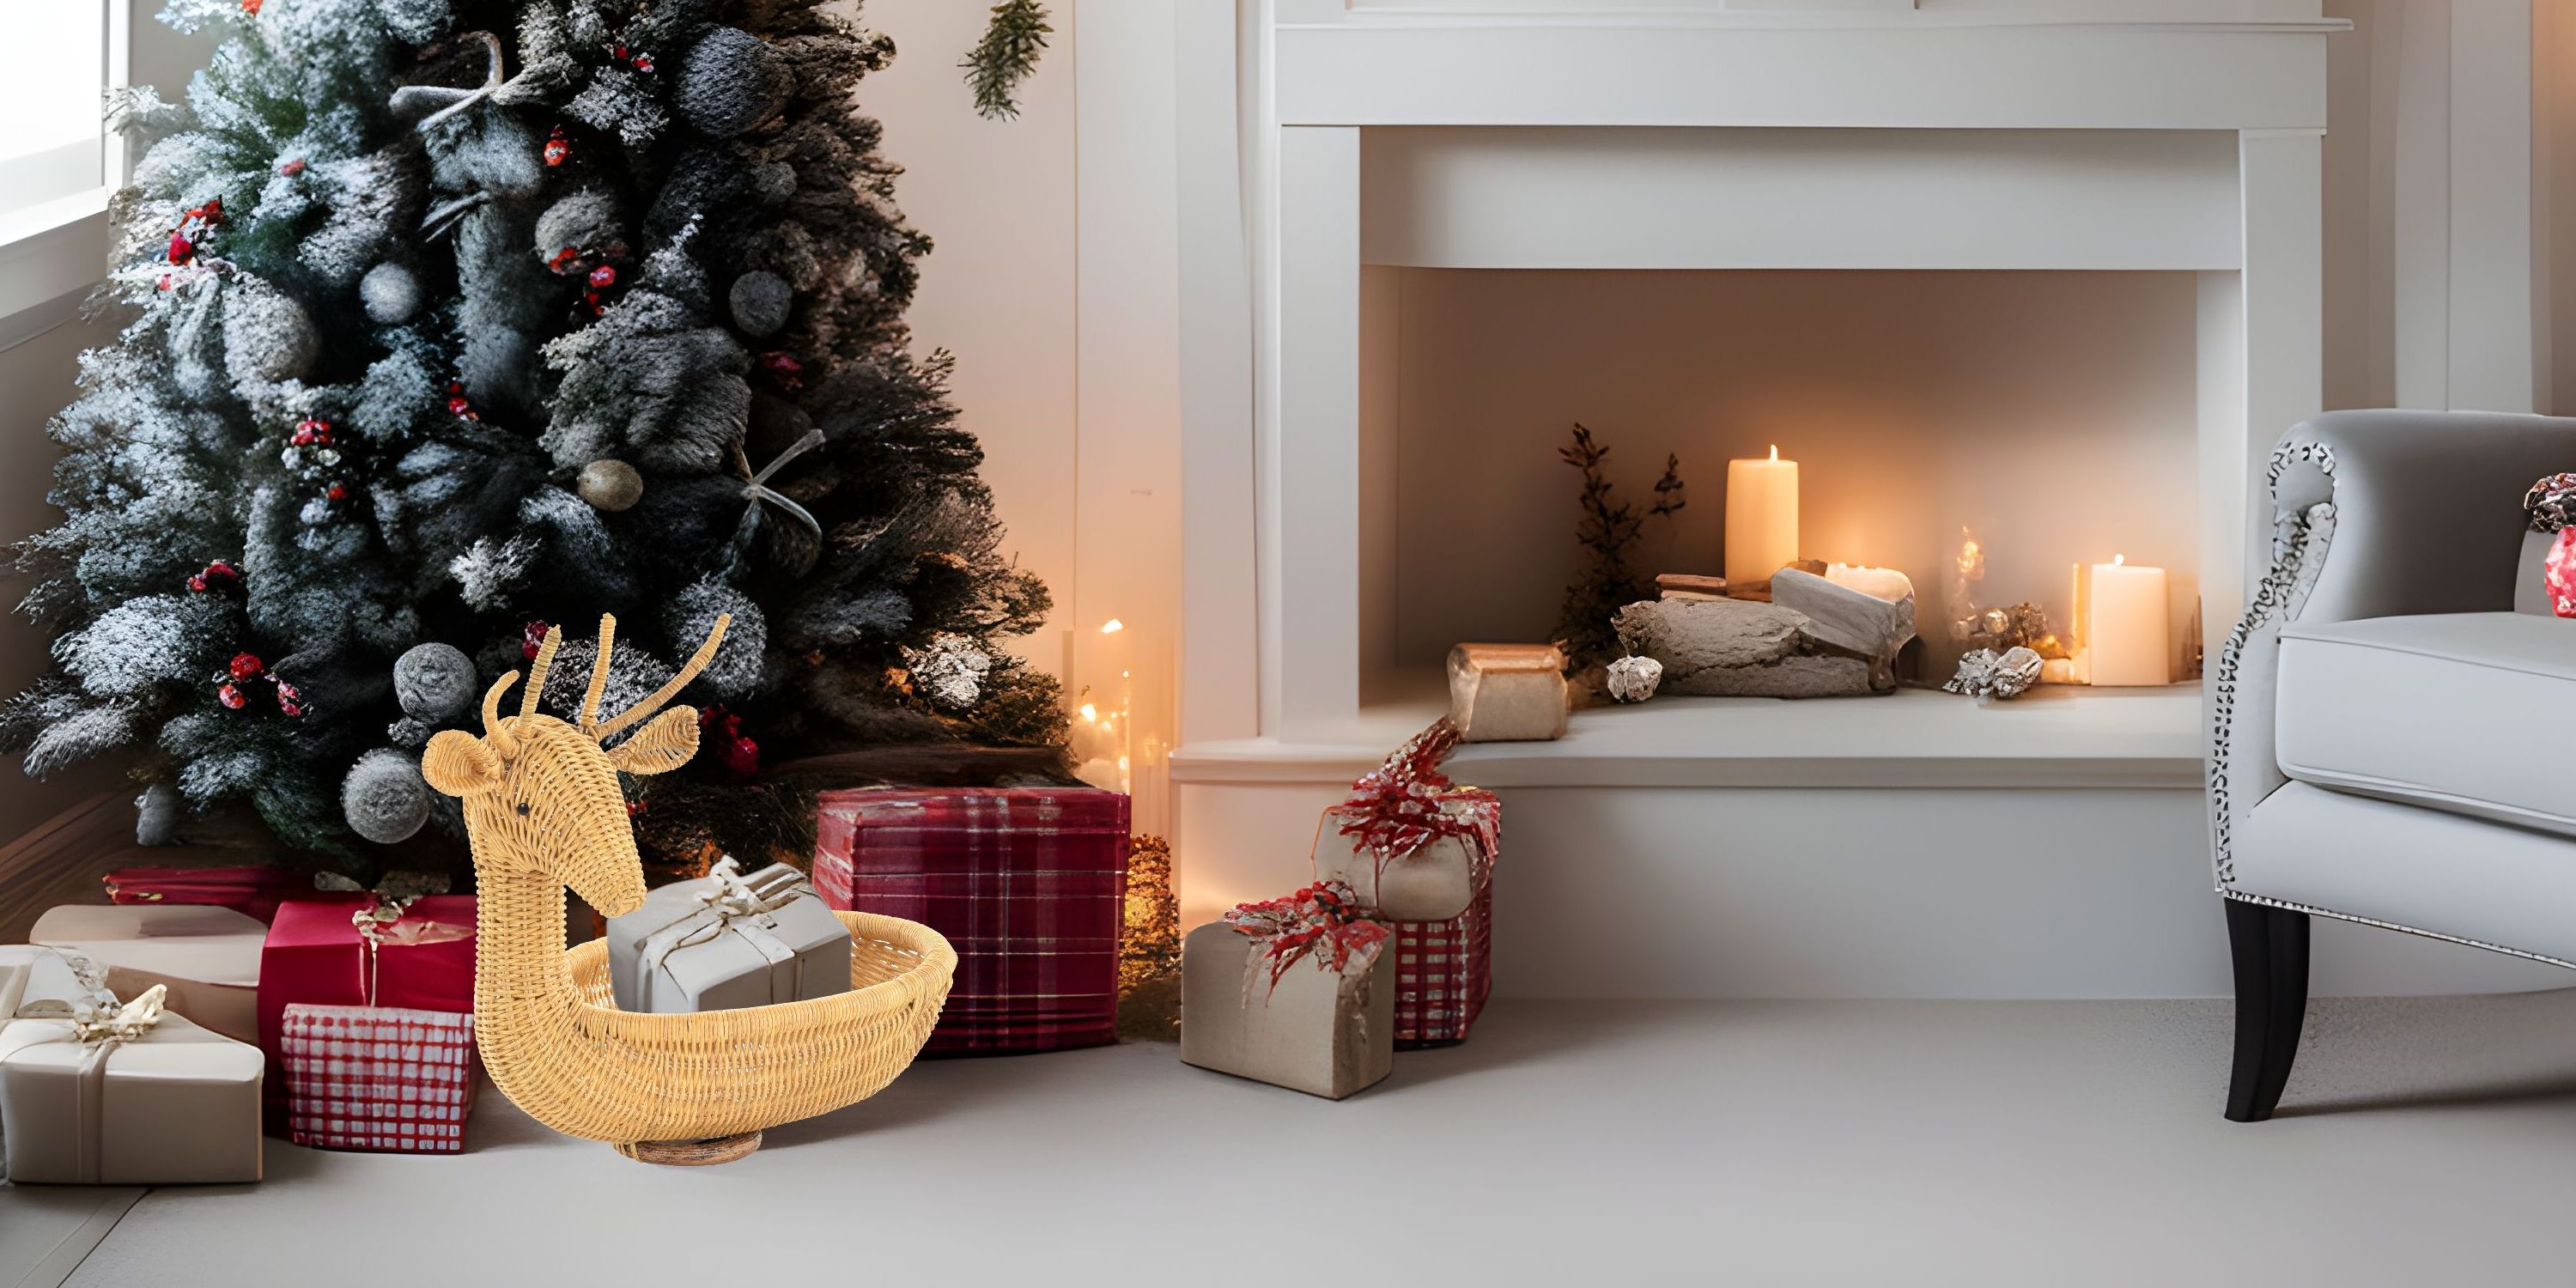 Weihnachtlich dekorieren Krines Home Blog